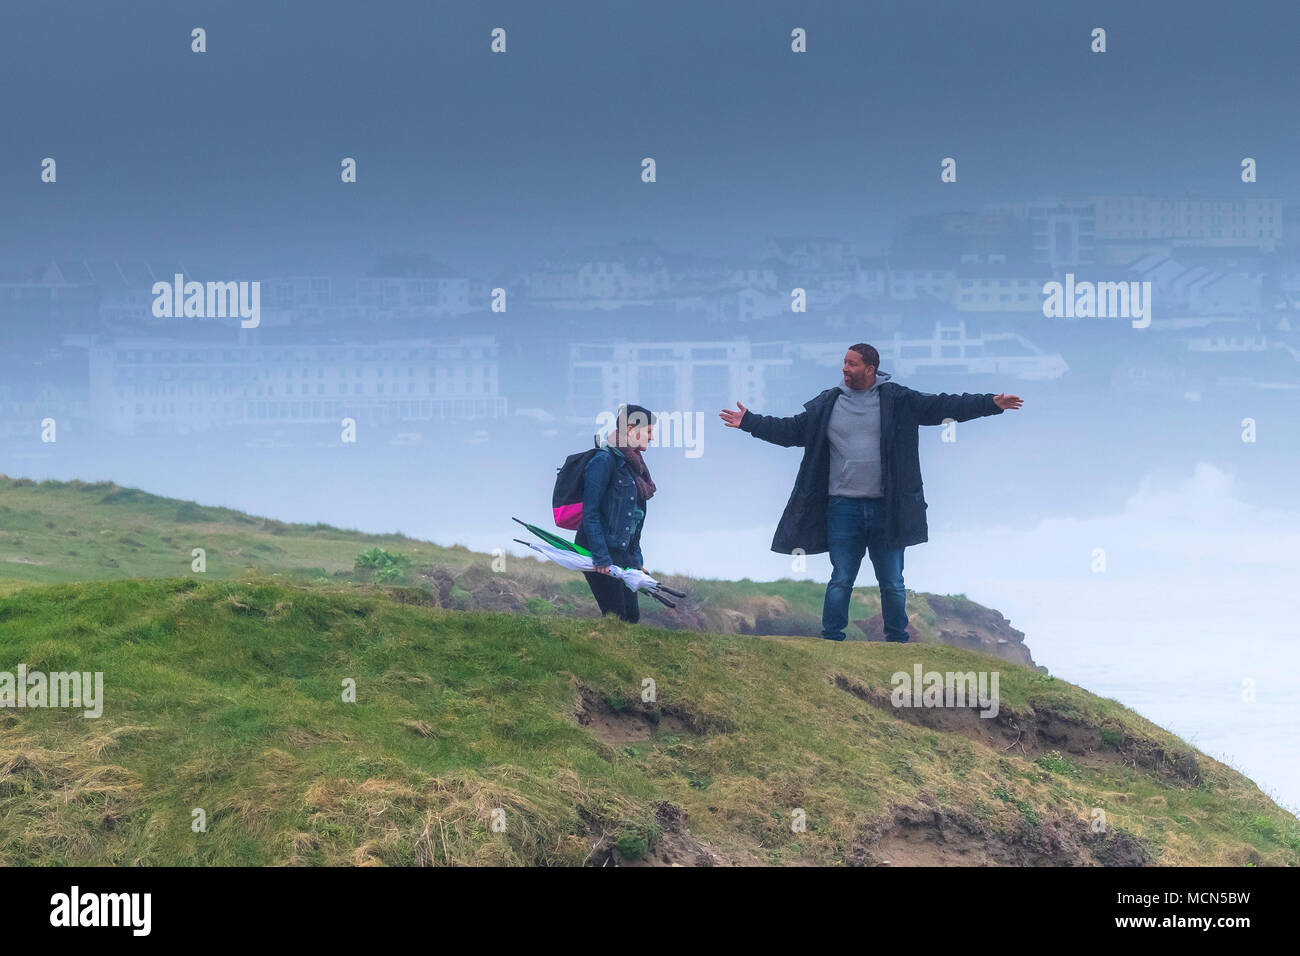 Regno Unito - previsioni del tempo - le persone che si godono il misty condizioni meteorologiche in Newquay Cornwall. Foto Stock